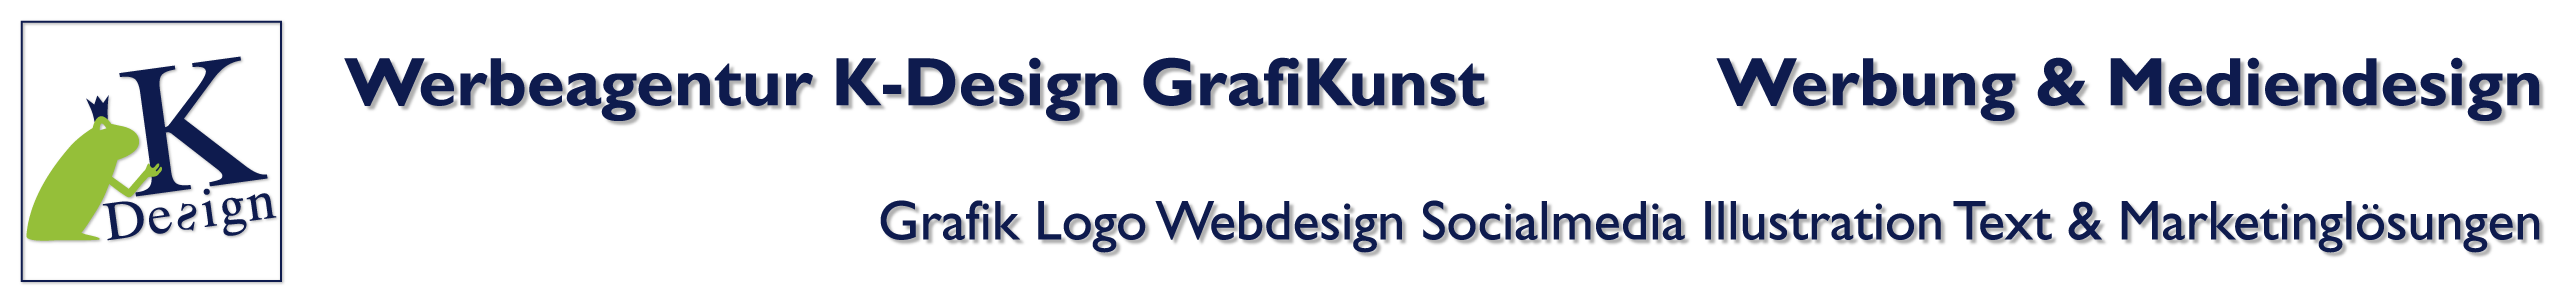 K-Design - GrafiKunst Werbeagentur in Salzburg: Logodesign, Grafikdesign, Webdesign, Textkonzeption, Illustrationen, Socialmedia, Suchmaschinenoptimierung und Marketinglösungen.